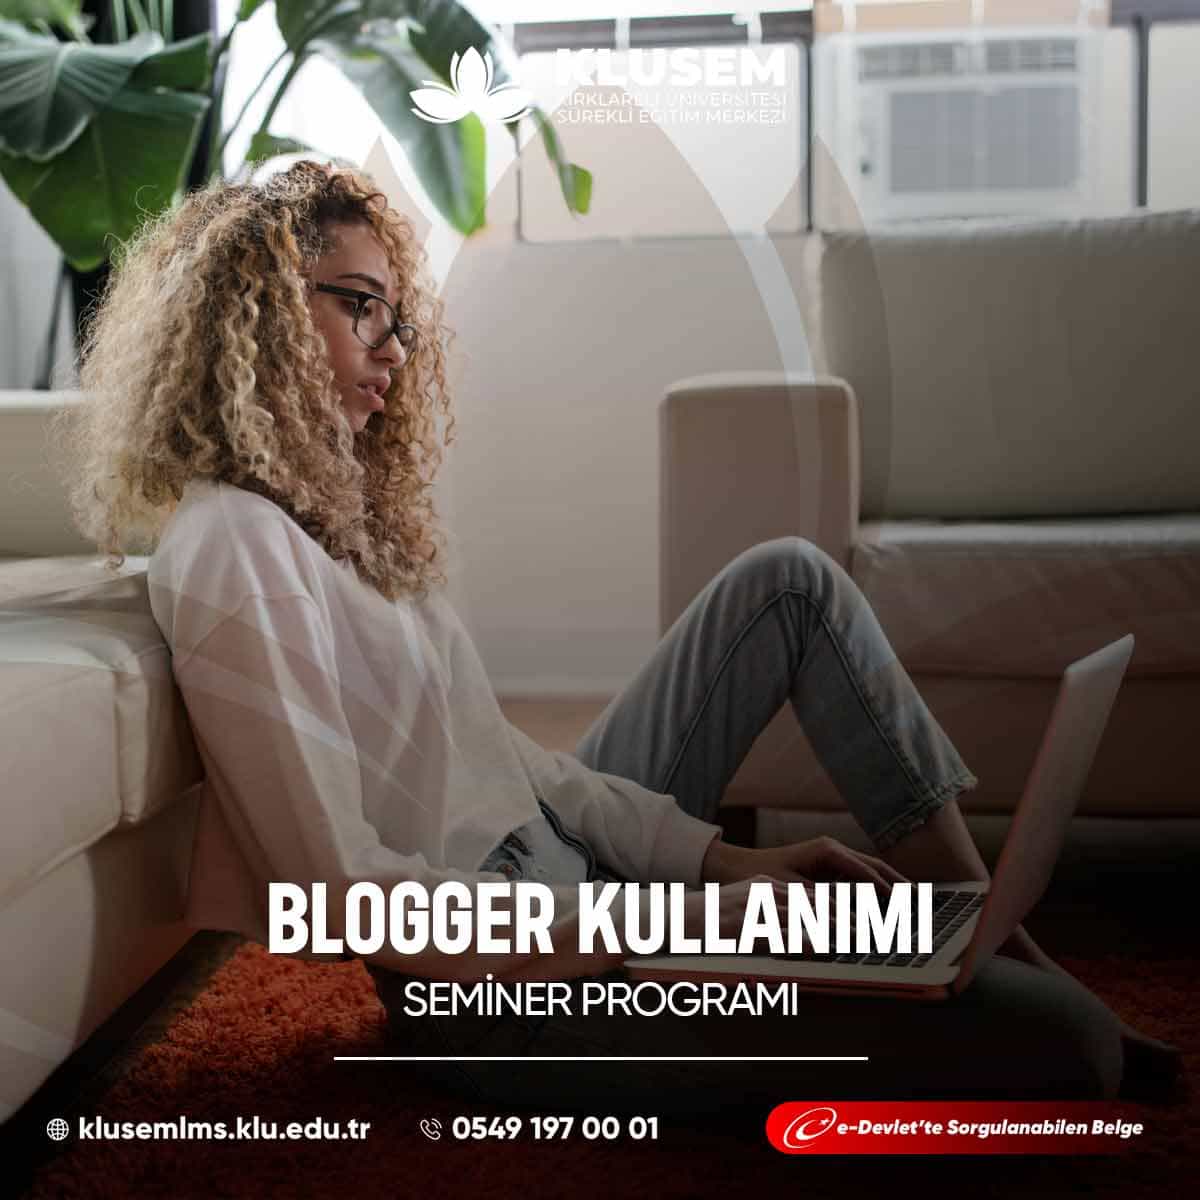 Blogger, Google tarafından sunulan ücretsiz bir blog platformudur ve kullanıcıların kişisel veya profesyonel bloglar oluşturmalarına olanak tanır.